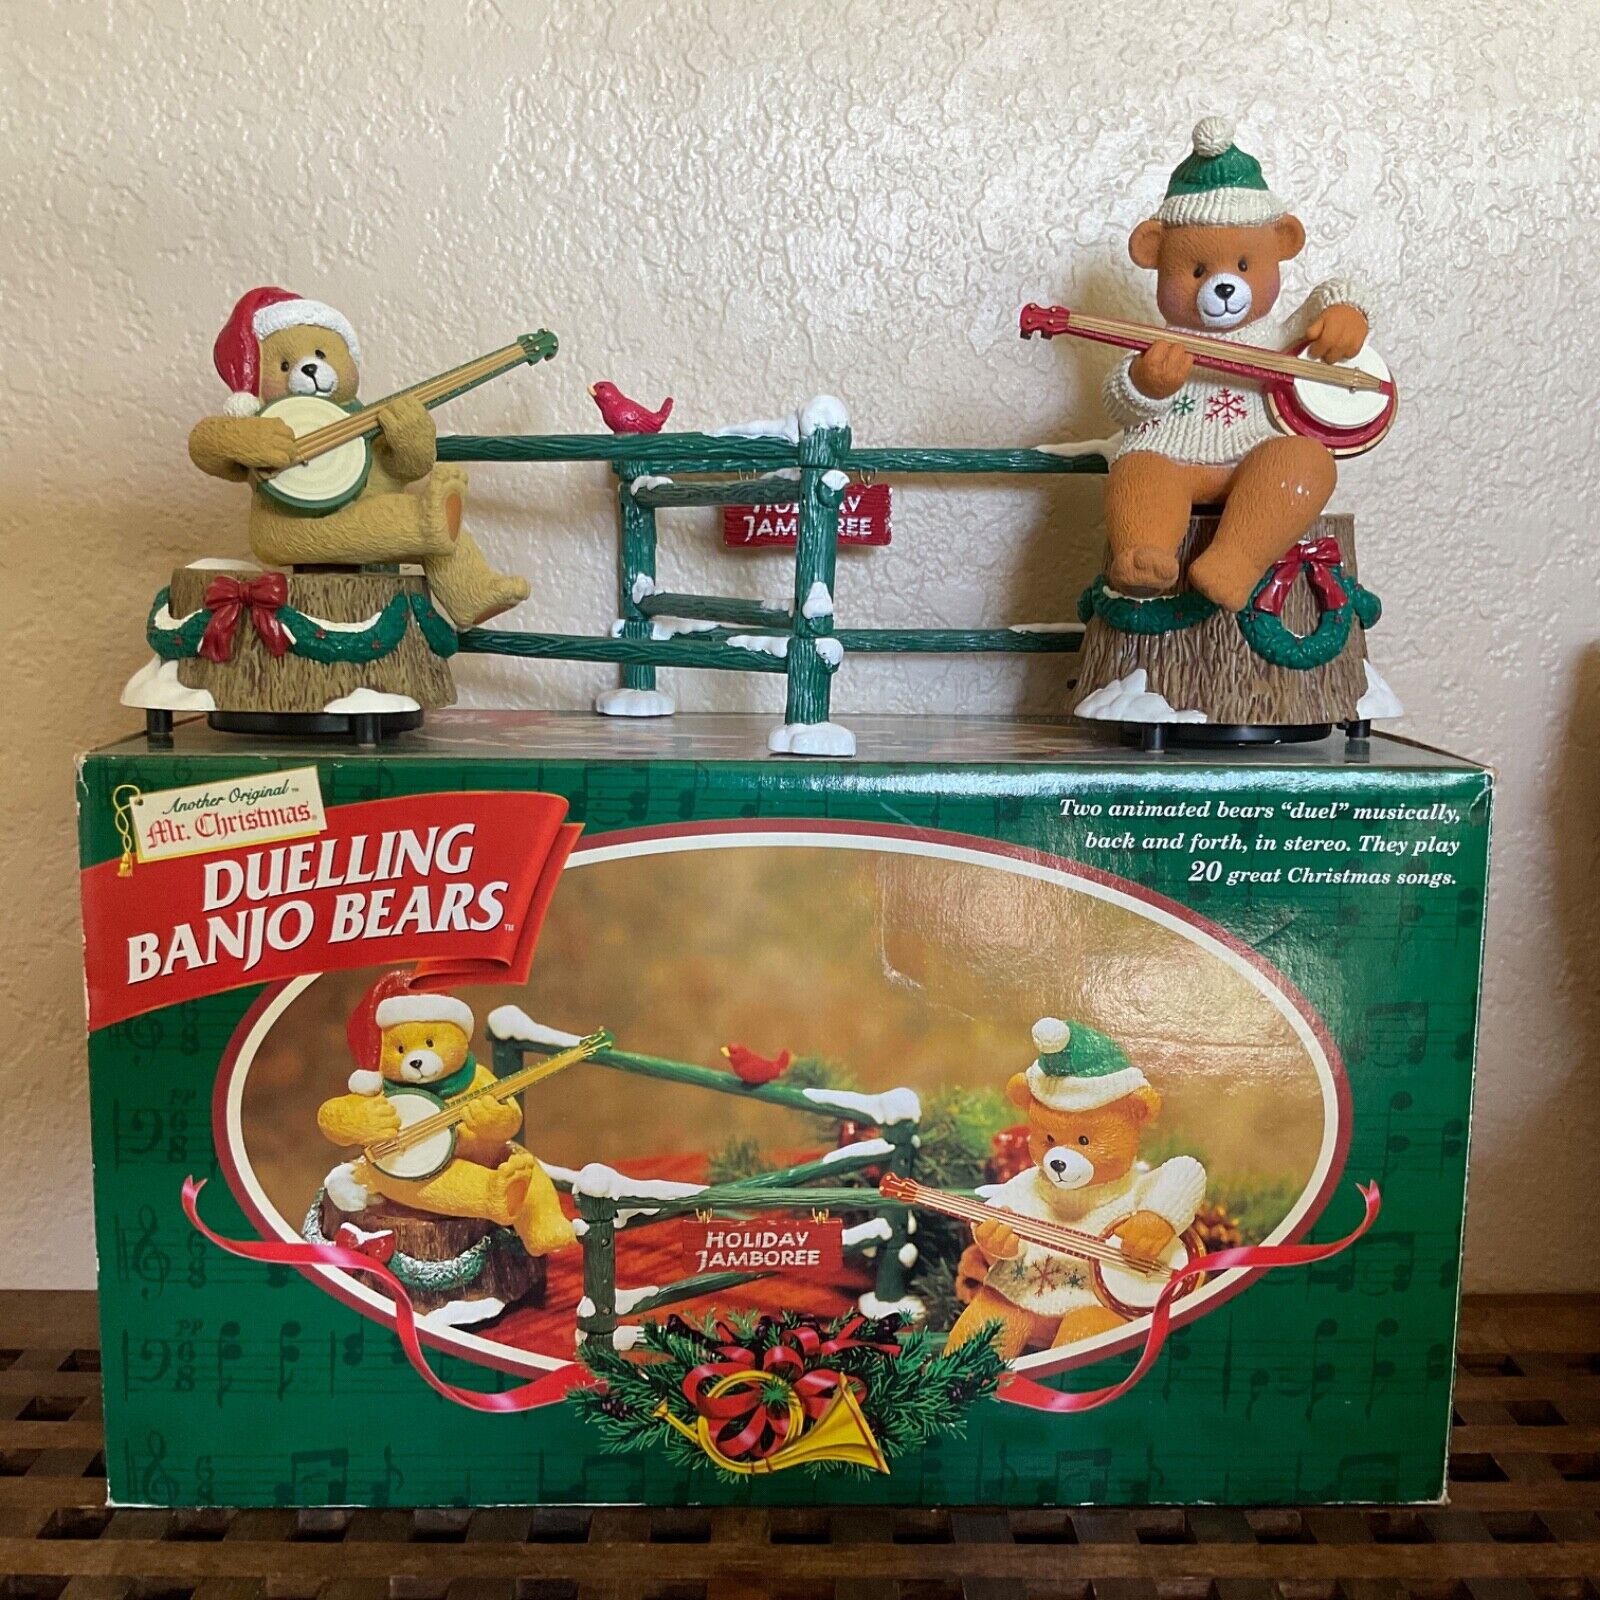 VTG Mr. Christmas Dueling Banjo Bears Animated 20 Christmas Songs + Box 1997